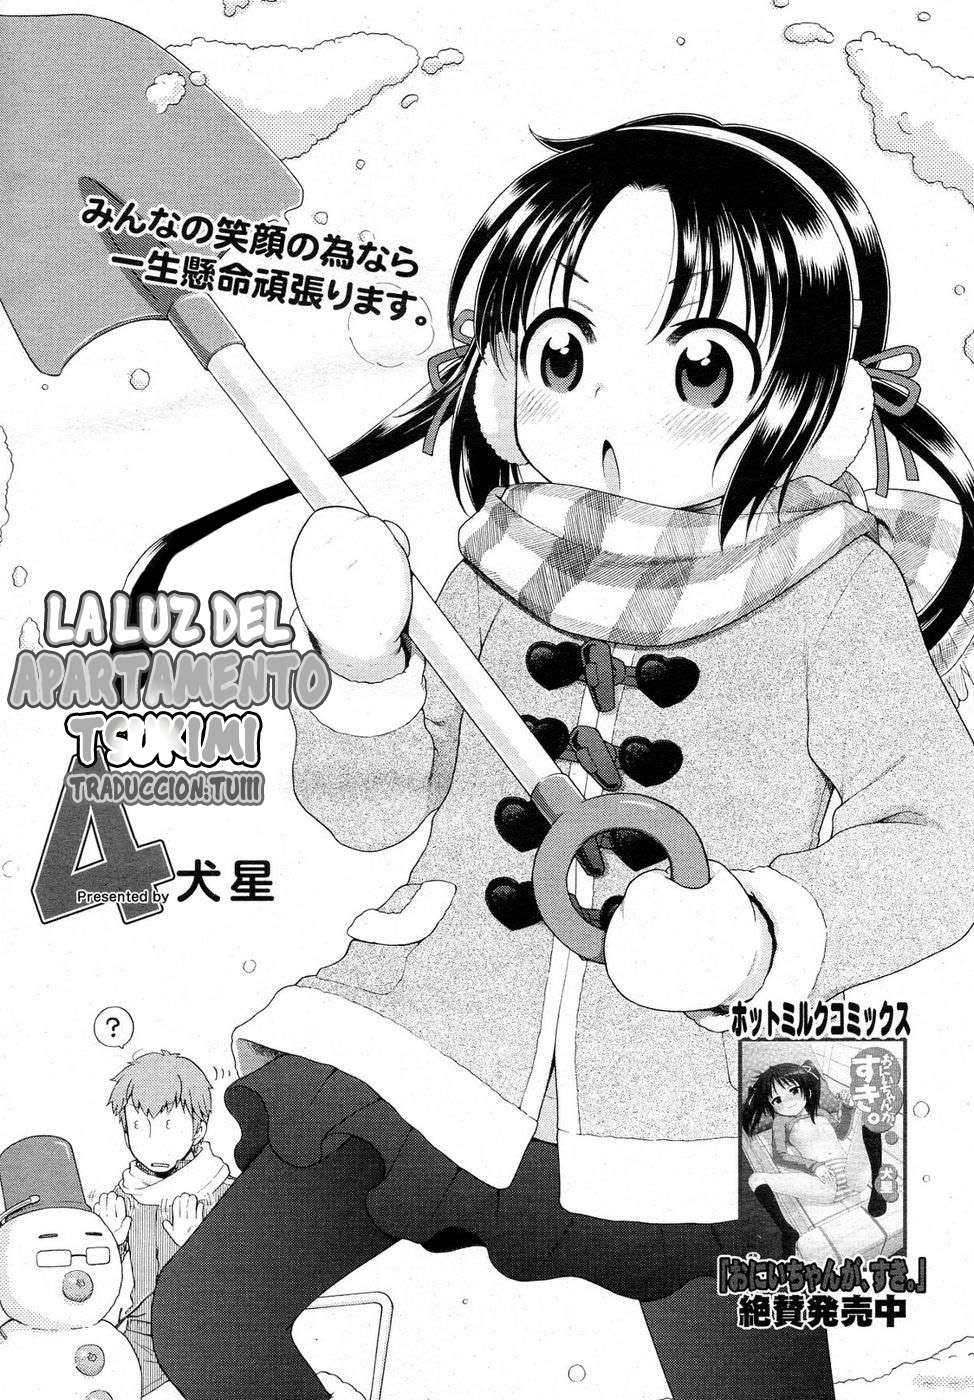 Tsukimisou No Akari (La Luz Del Apartamento Tsukimi) Chapter-4 - 1